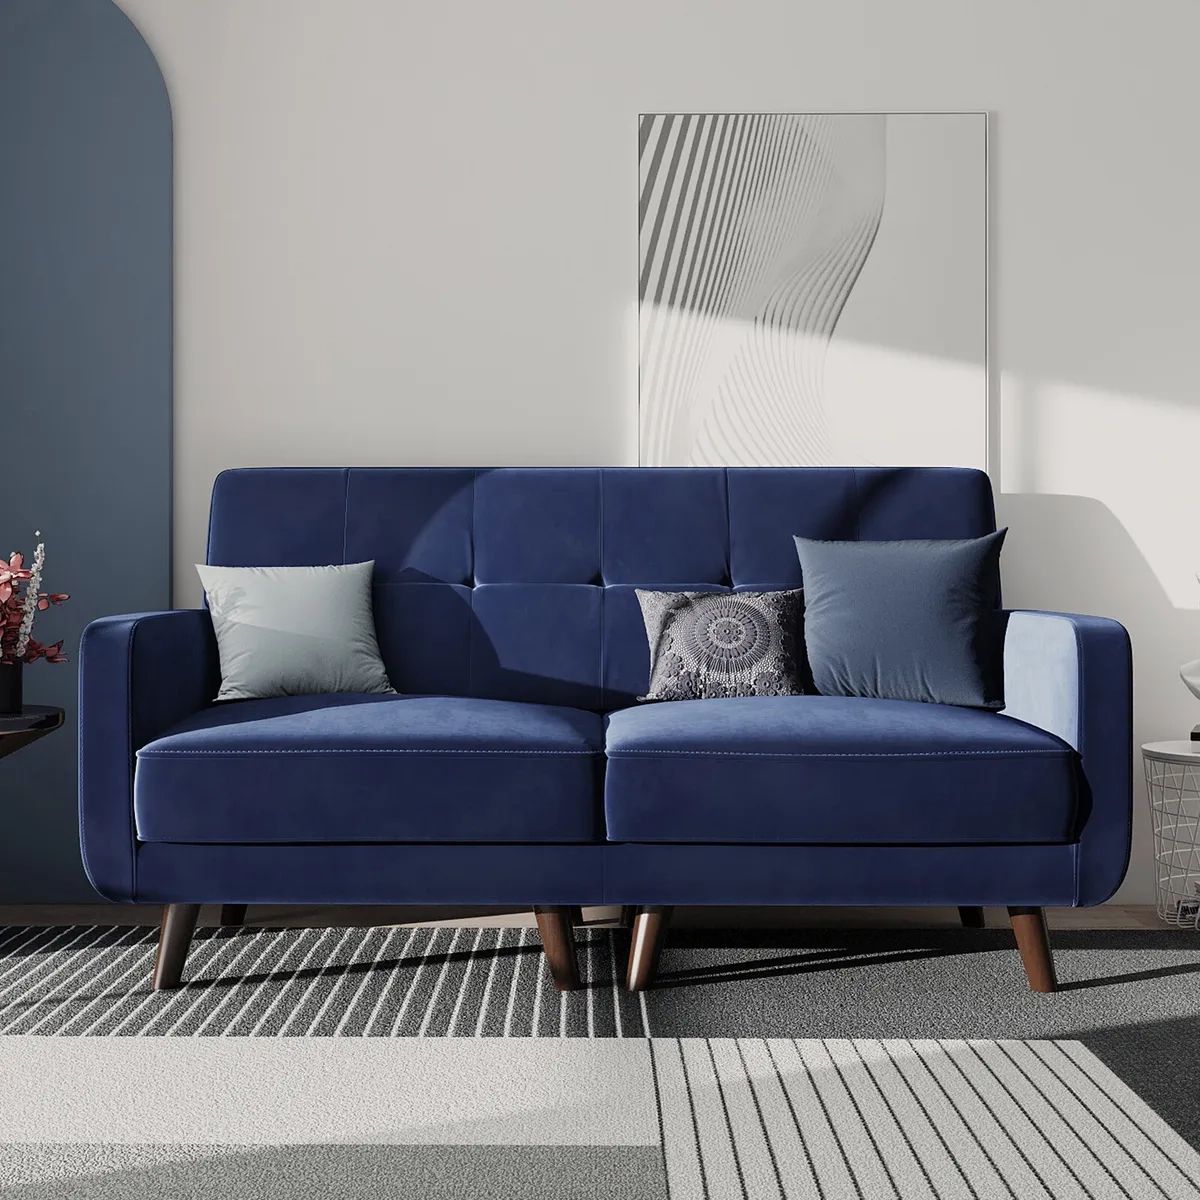 Velvet Tufted Loveseat Modern 2 Seater Sofa Couch For Living Room Small  Space | Ebay Intended For Small Love Seats In Velvet (View 15 of 15)